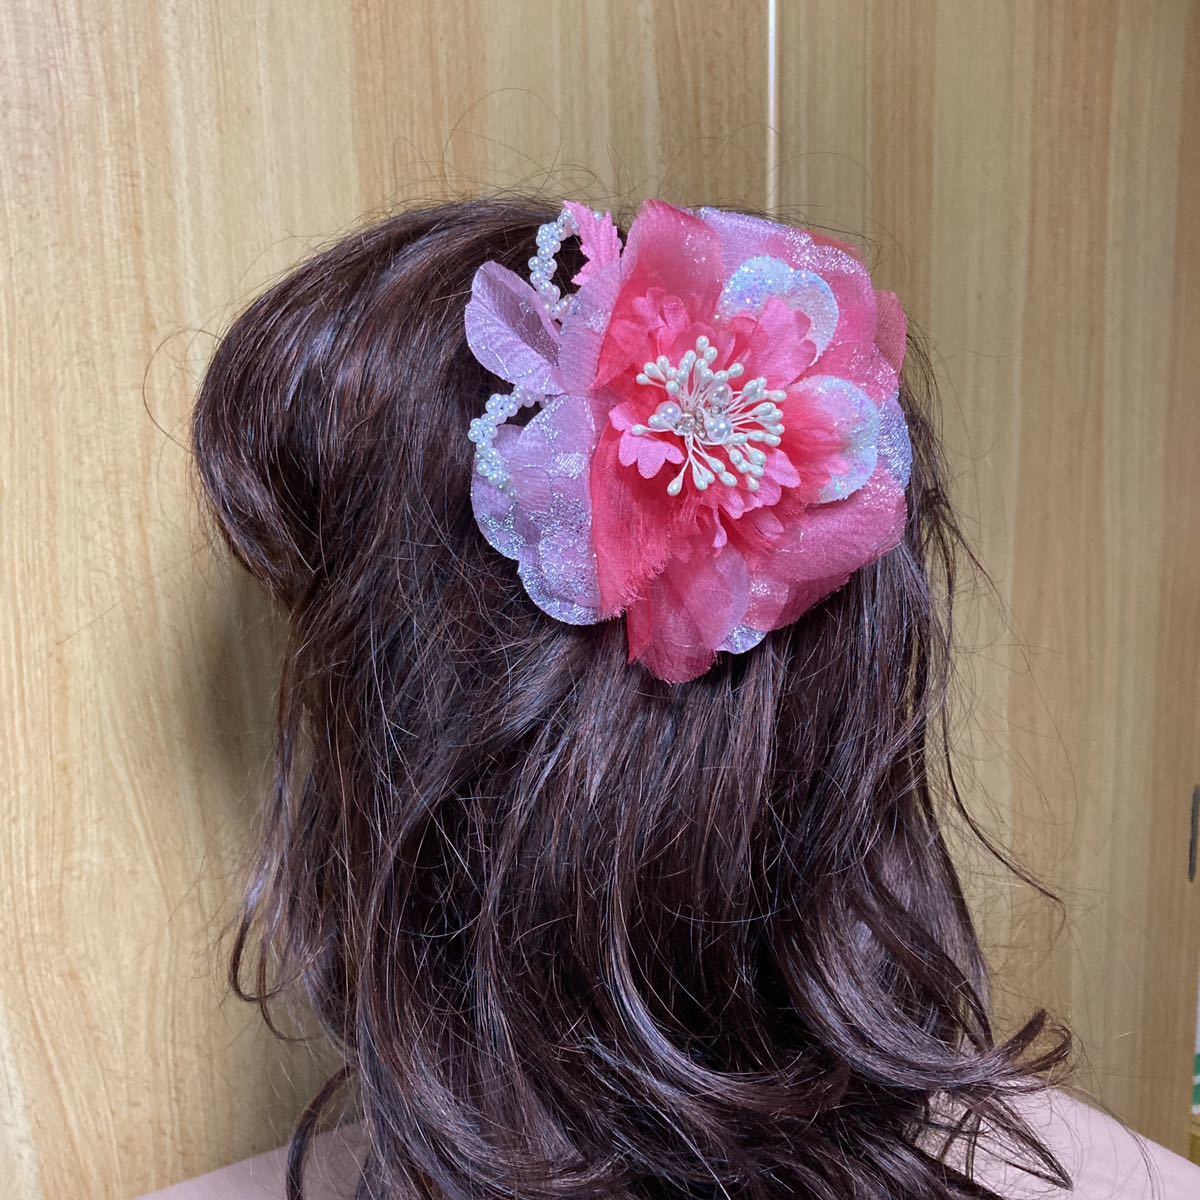 USED* украшение для волос * hakama * день совершеннолетия * церемония окончания * розовый * жемчуг * обычная почта 200 иен из 